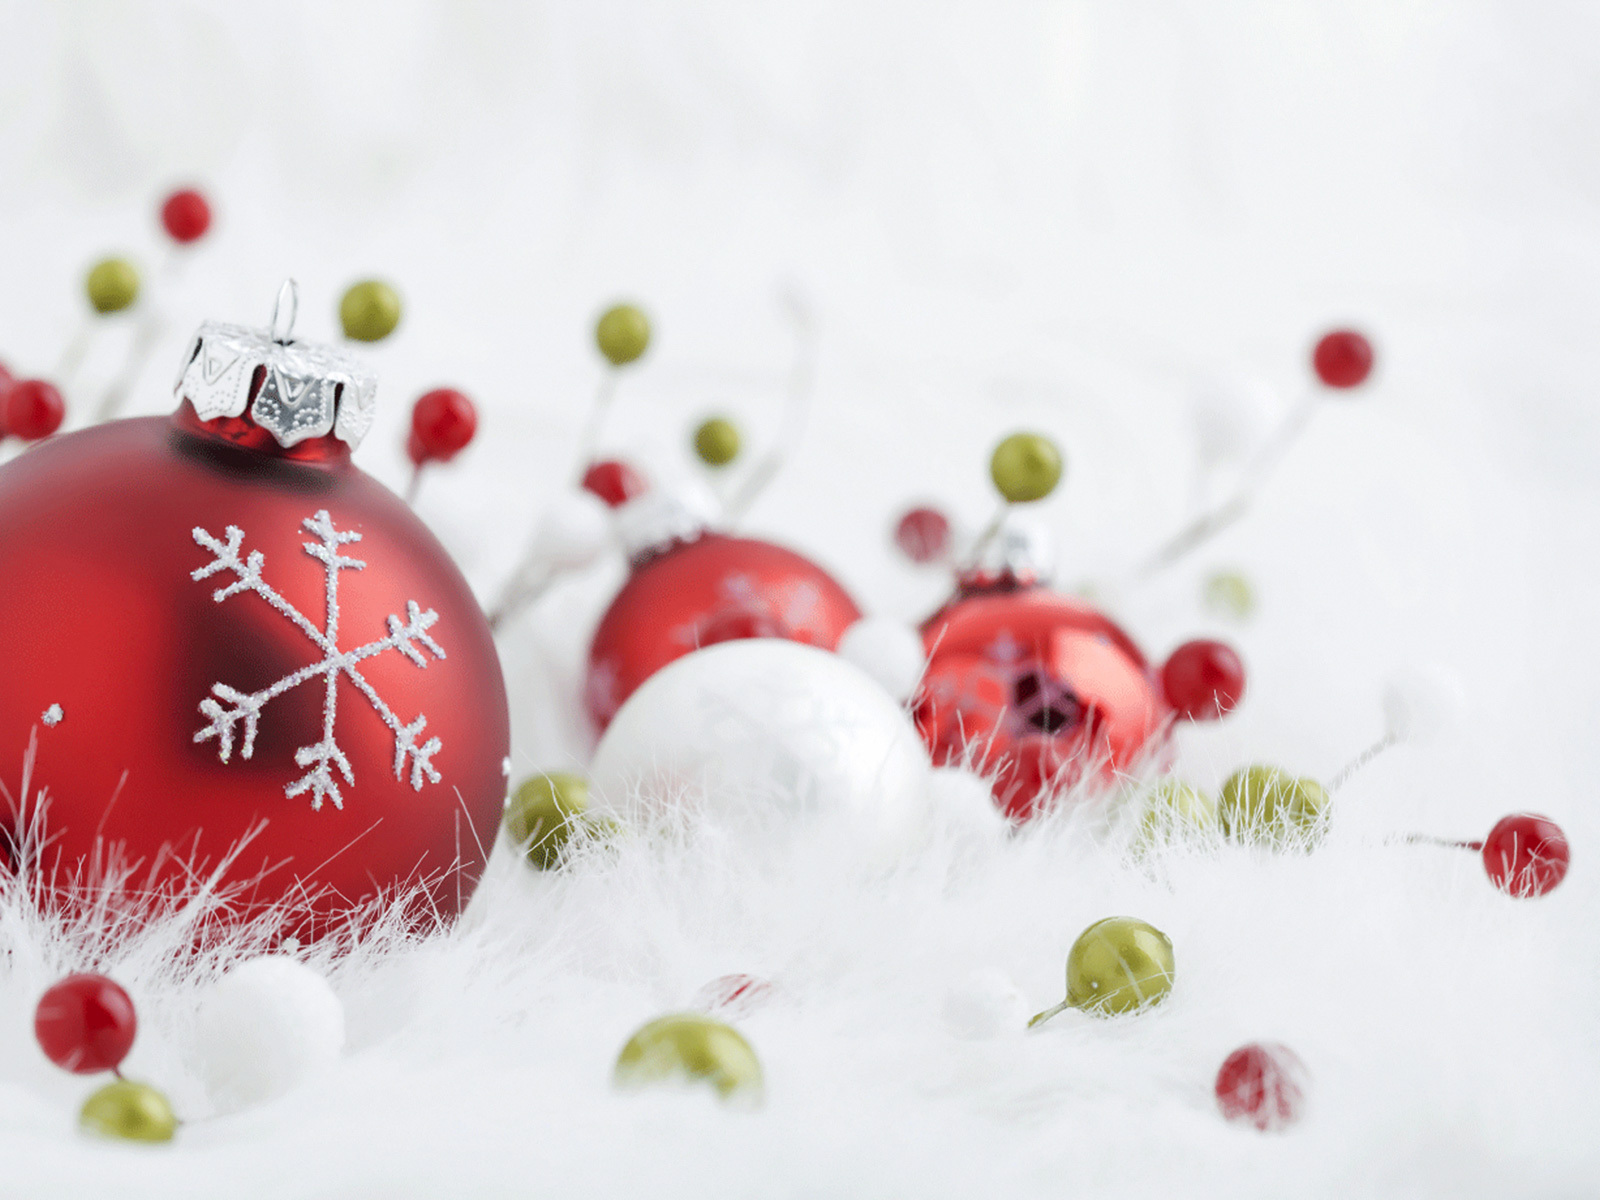 1920x1080 Background holidays, new year, decorations, christmas xmas, white